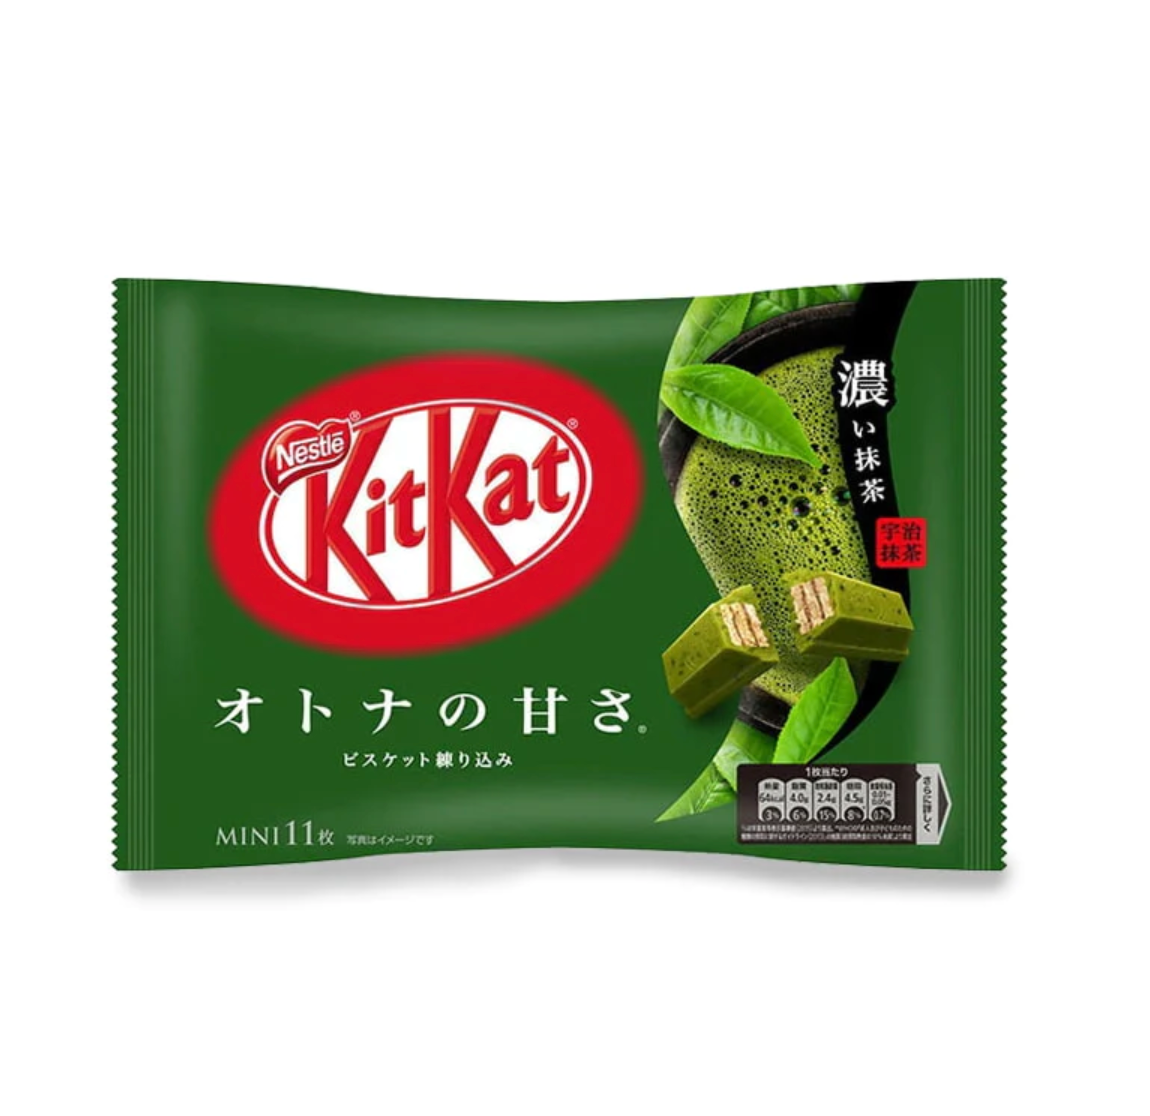 Kit Kat Mini - Strong Matcha - Mini Chocolate Bar (Japan)